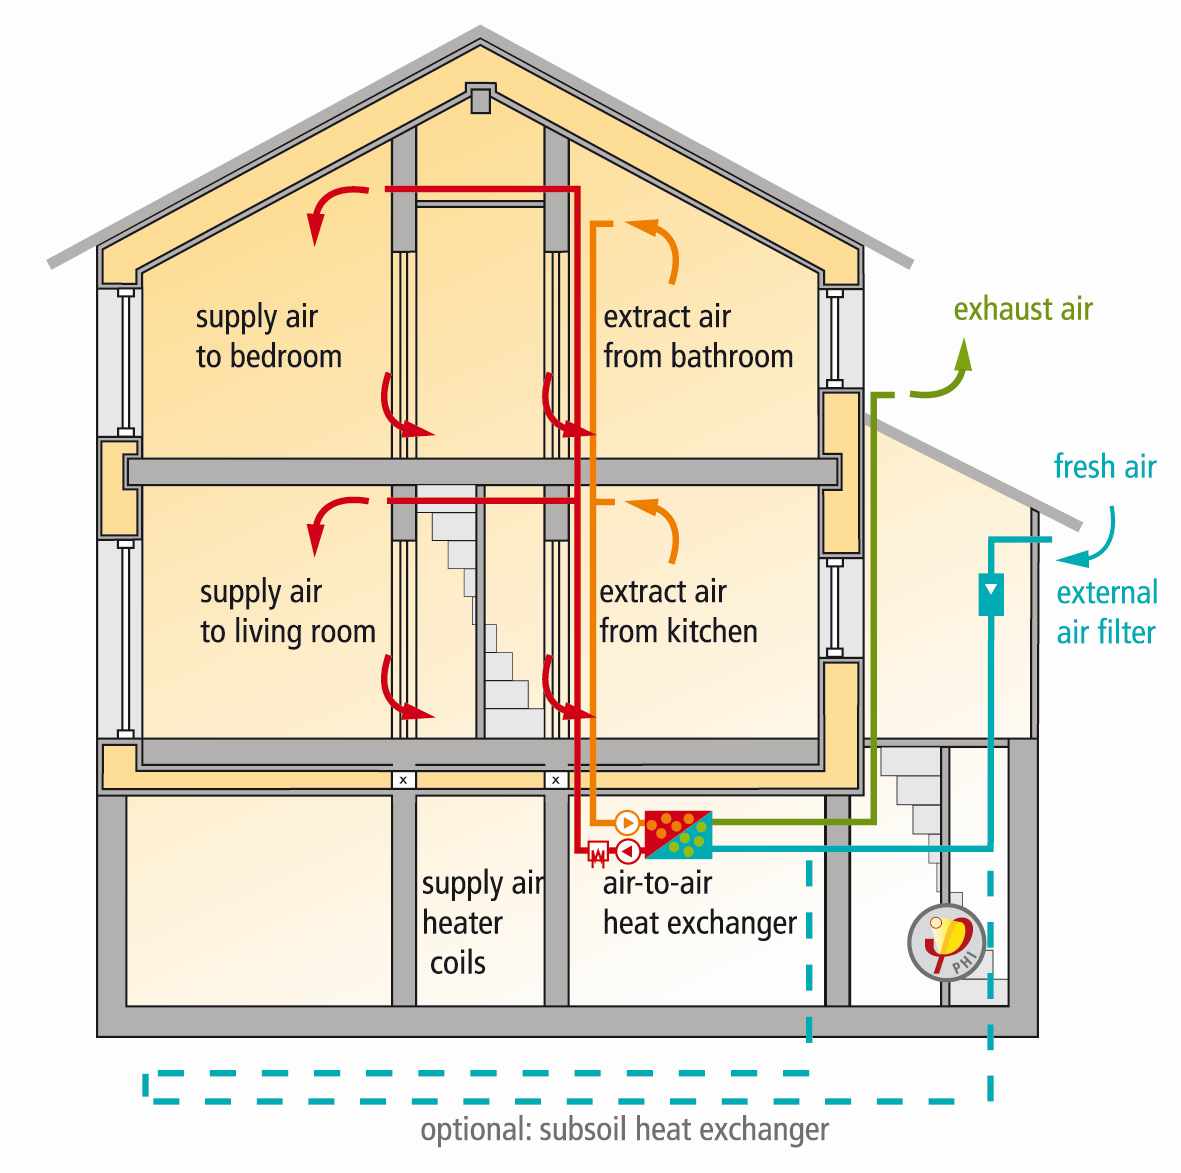 Ενεργειακός Κλιματισμός σε Παθητικά Κτίρια Θερμομονωμένη αεροστεγανή κατασκευή, σωστός εξαερισμός Η ενεργειακή απόδοση δεν μπορεί να θεωρηθεί δικαιολογία για να μειωθεί το ποσοστό του εξαερισμού.